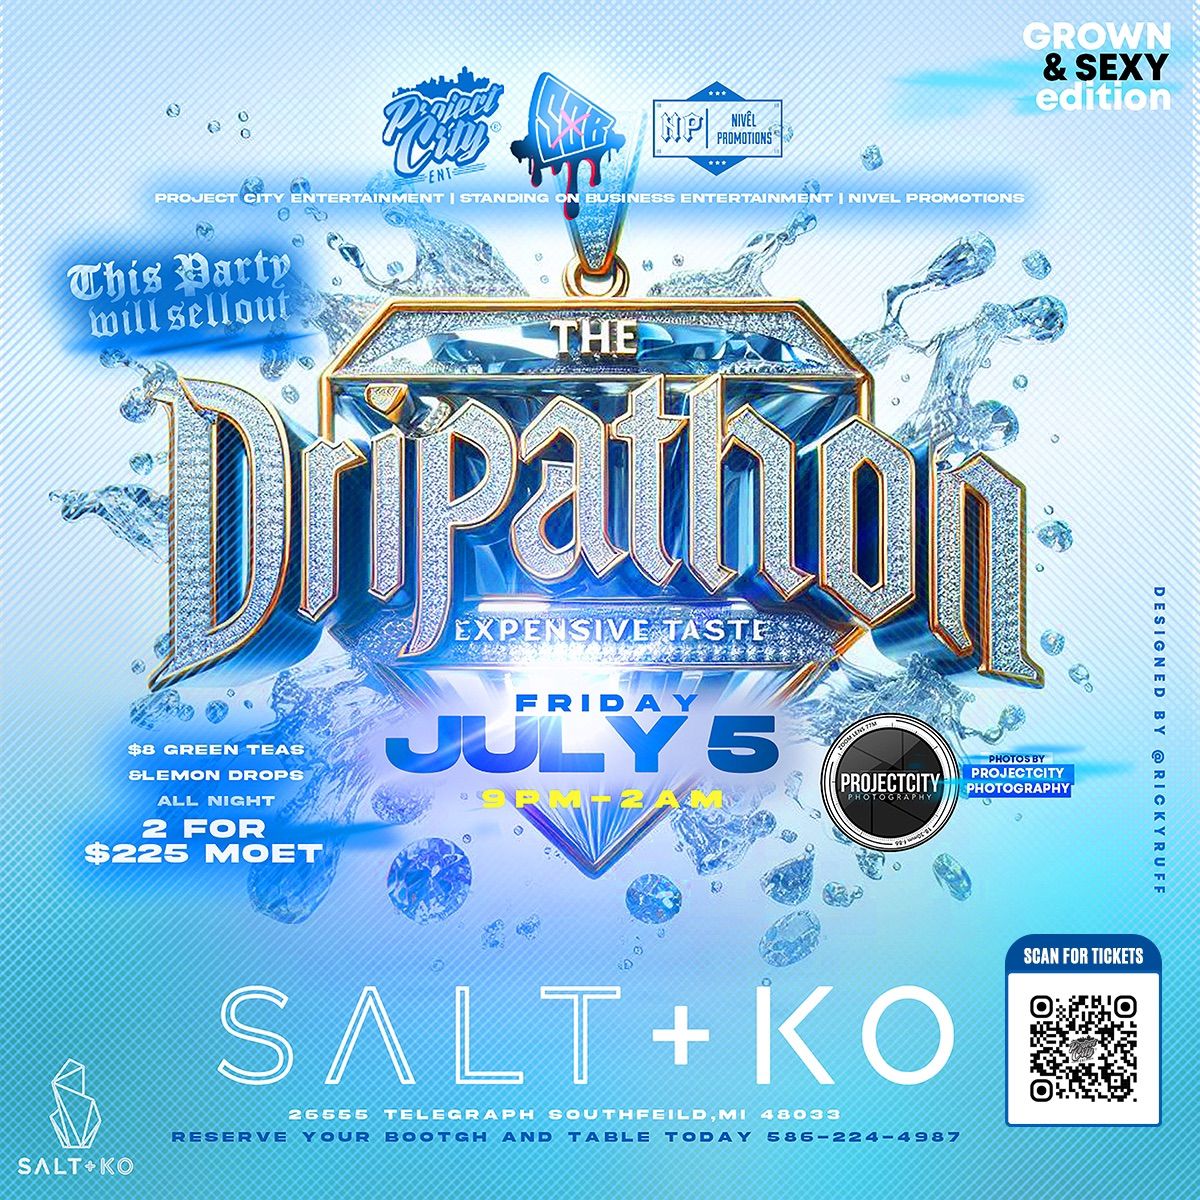 The Dripathon at Salt+ Ko Friday July 5th